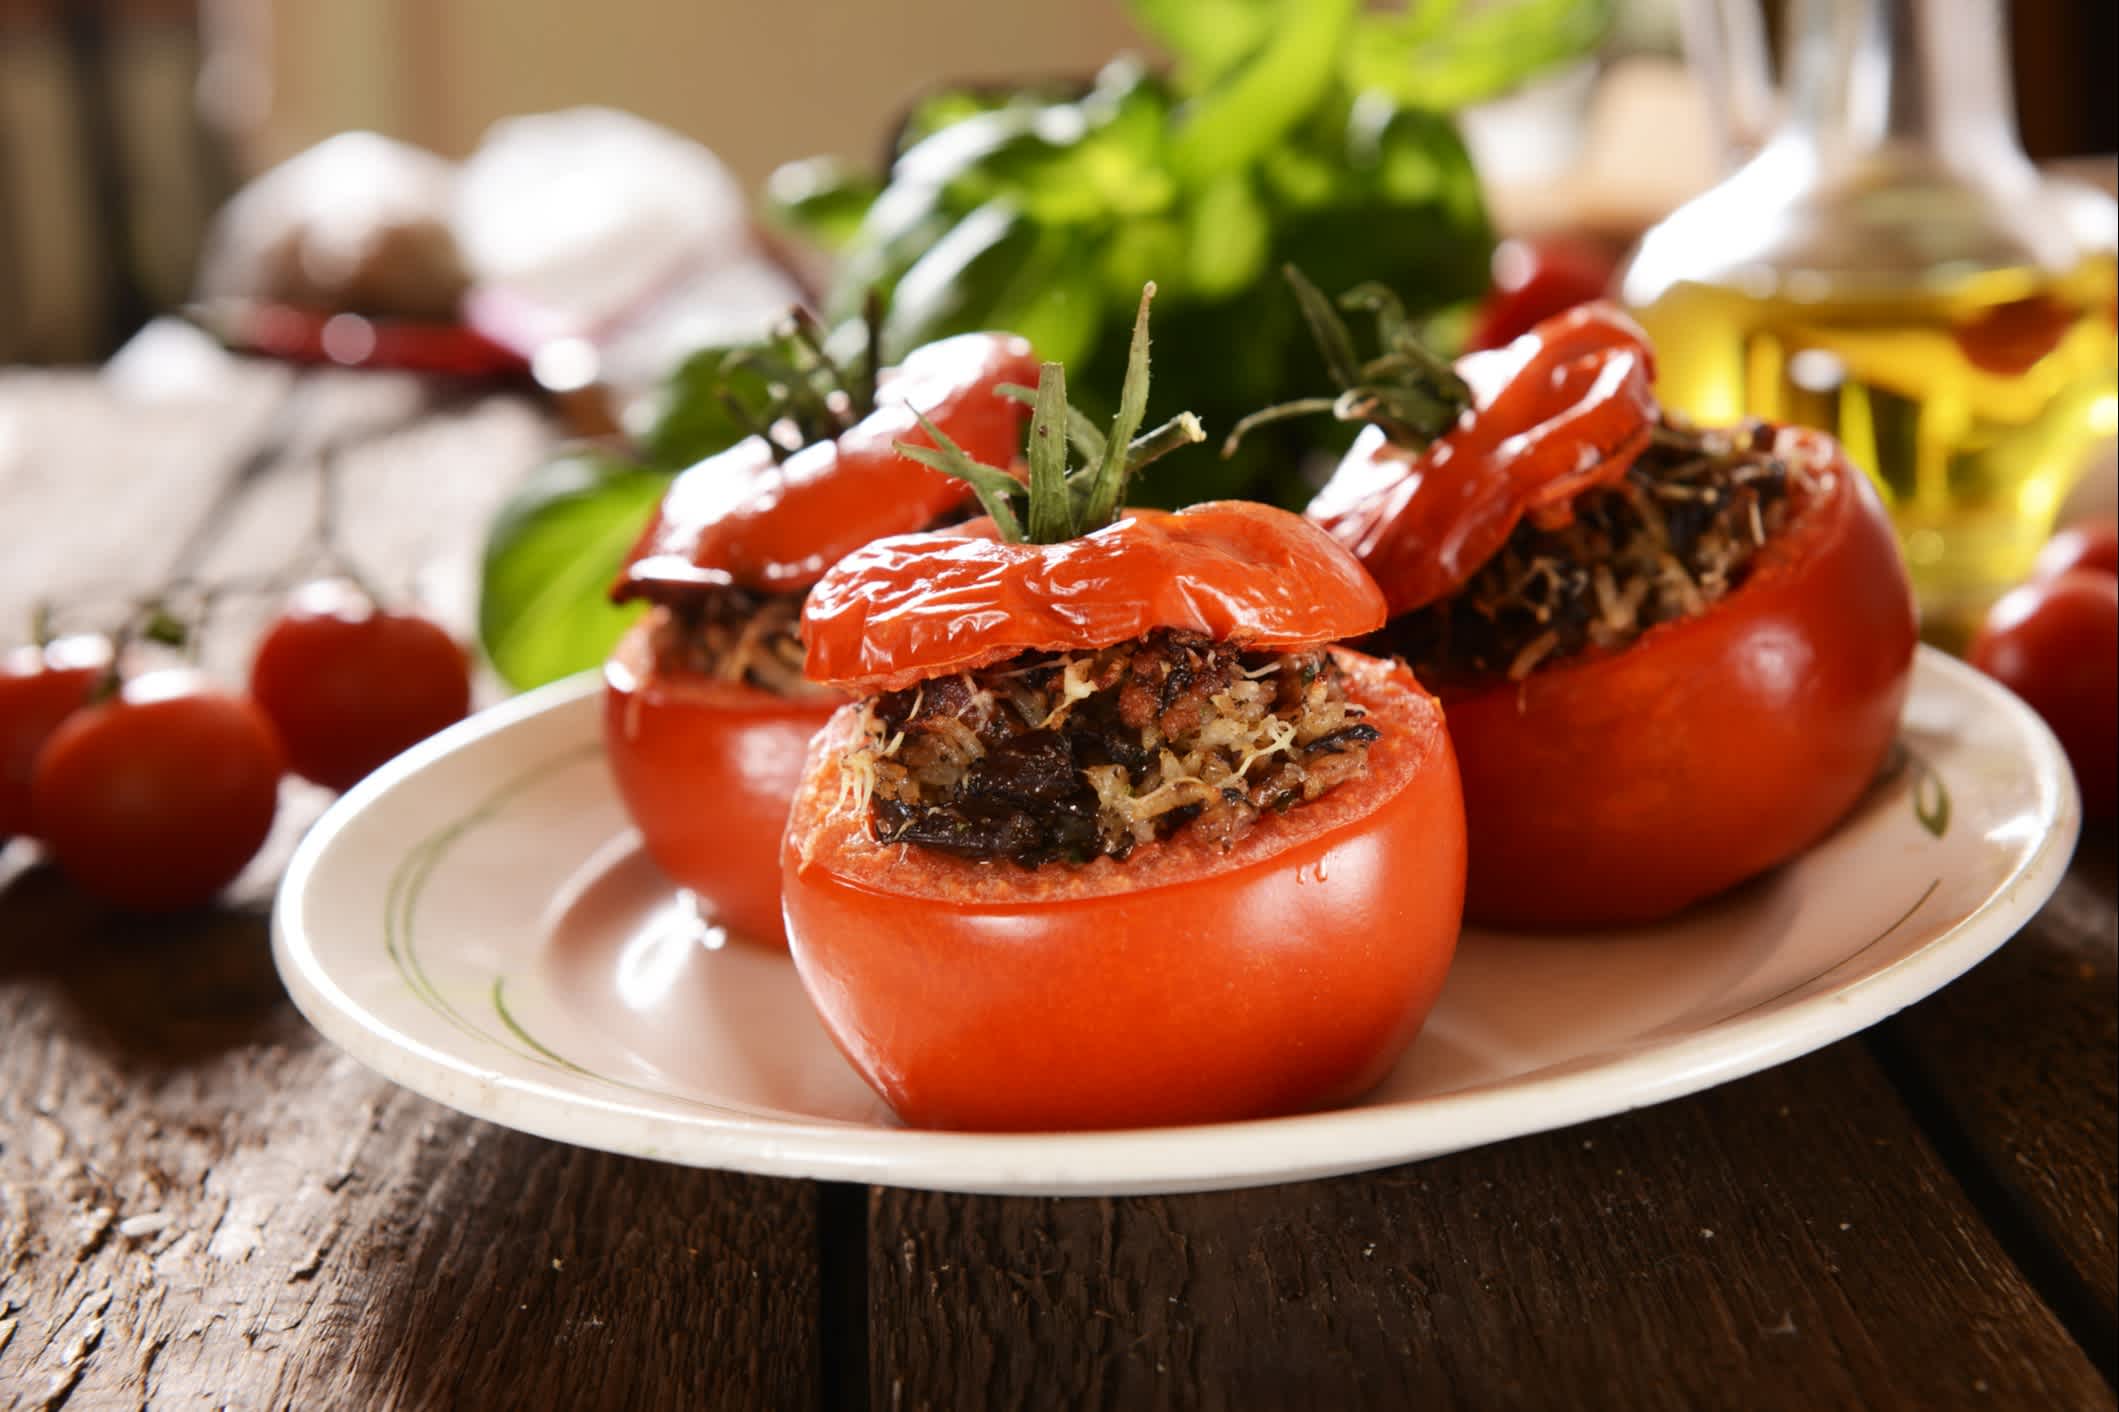 Yemista - griechische gefüllte geröstete Tomaten

